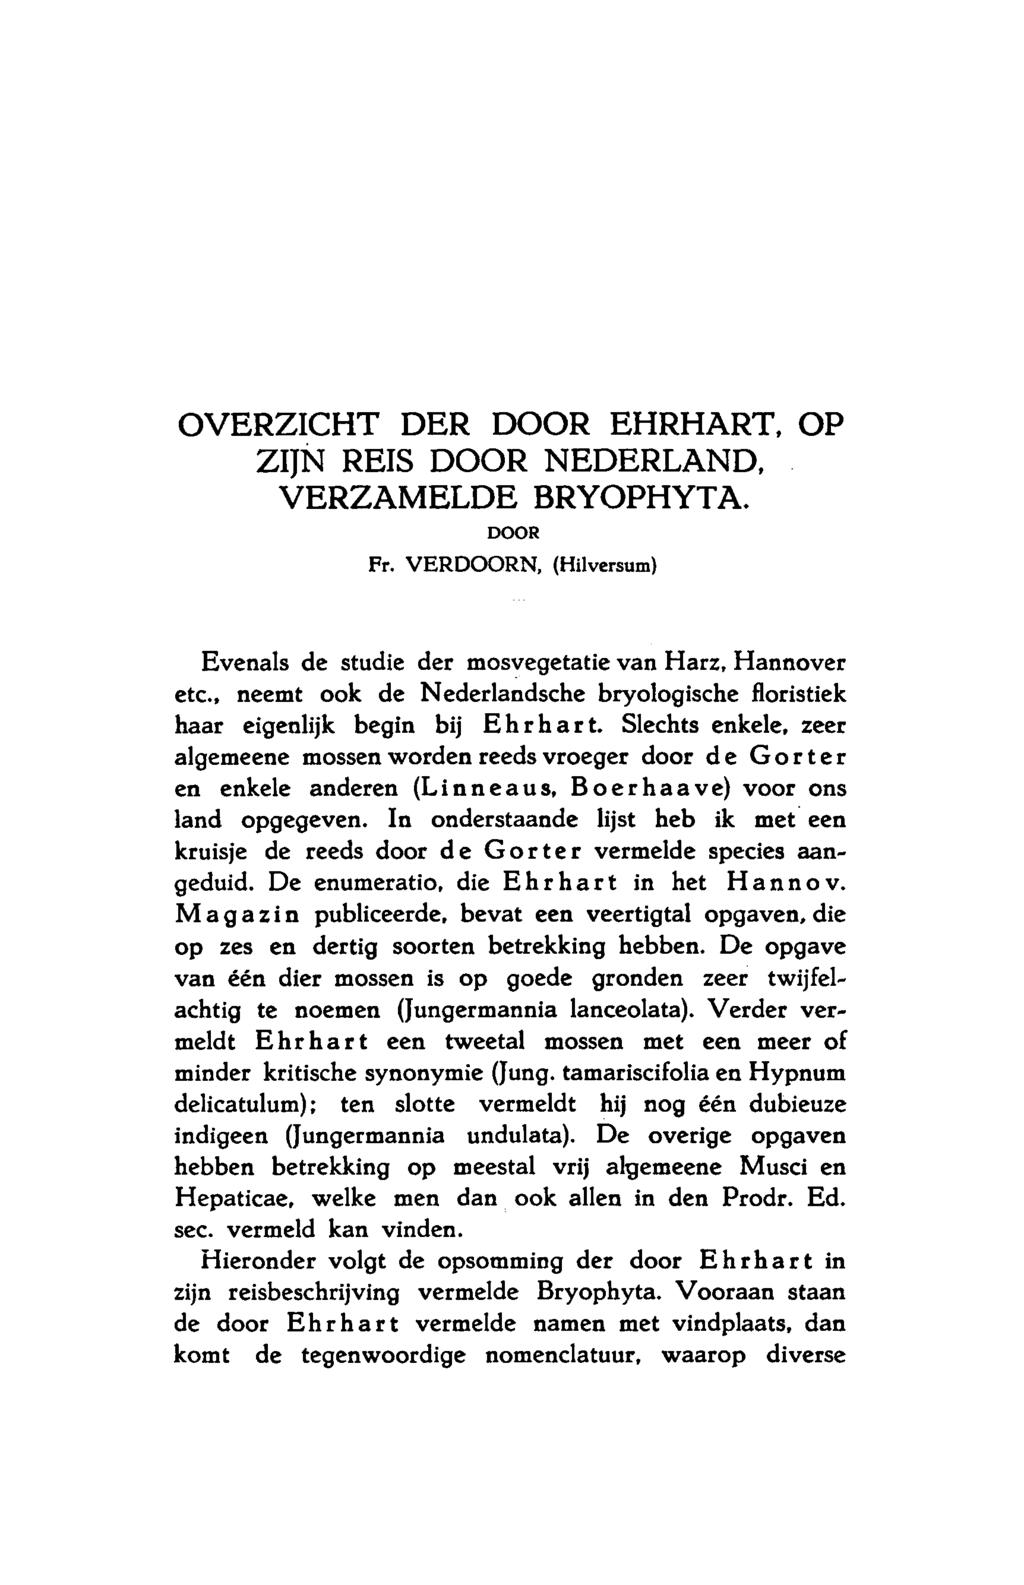 Overzicht der door Ehrhart, op zijn reis door Nederland, verzamelde Bryophyta. DOOR Fr. Verdoorn, (Hilversum) Evenals de studie der mosvegetatie van Harz, Hannover etc.